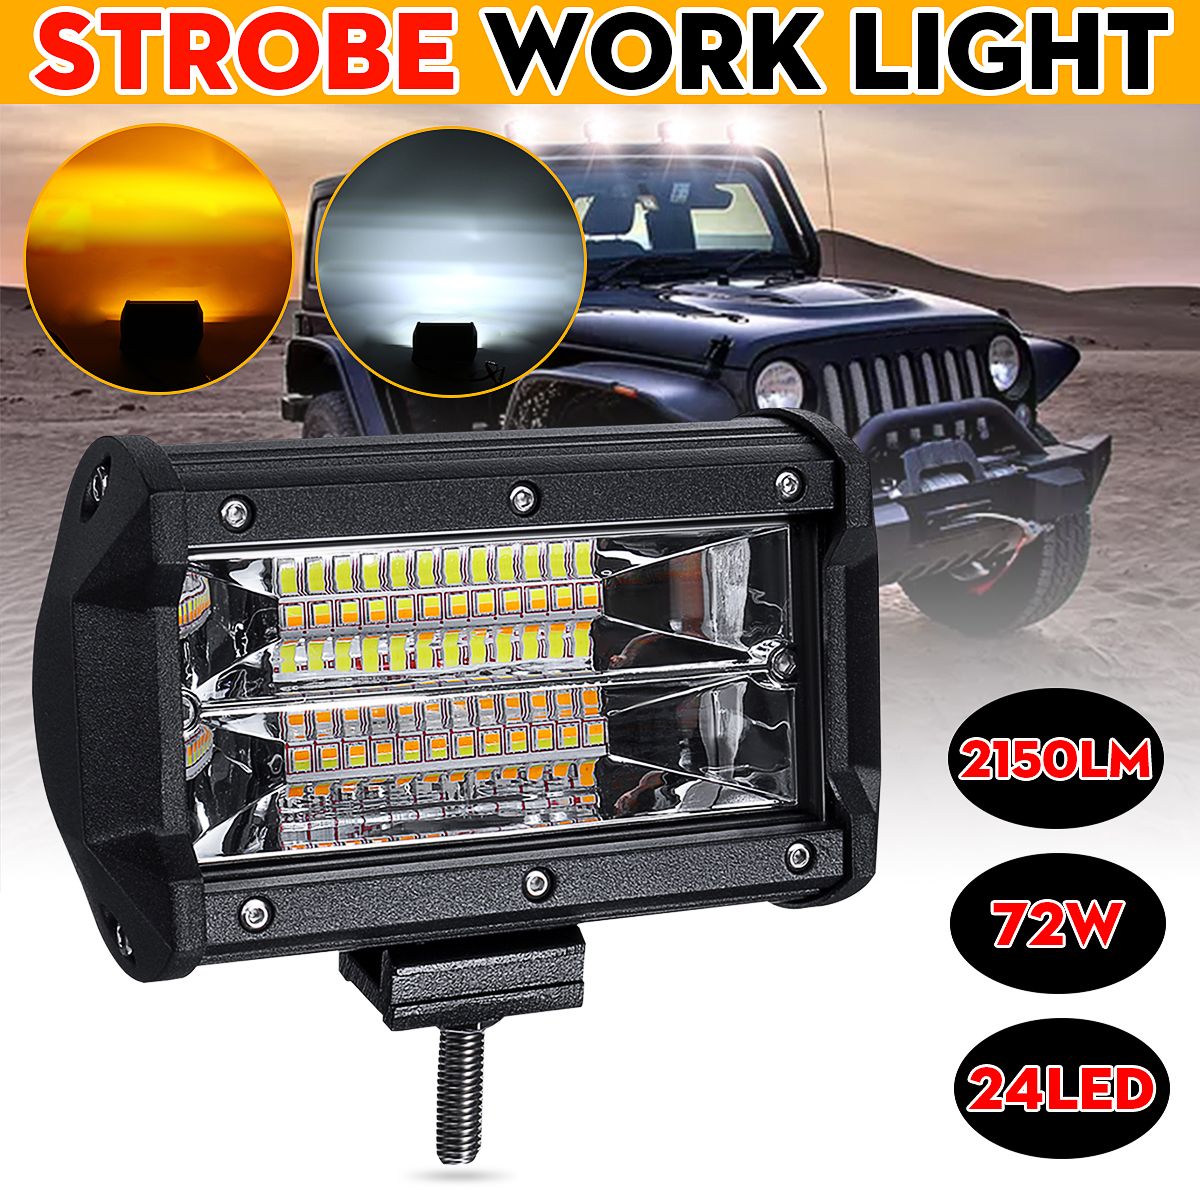 5-Inch-72W-LED-Work-Light-Bar-Strobe-Flash-Lamp-White-Amber-For-Off-road-SUV-ATV-1637484